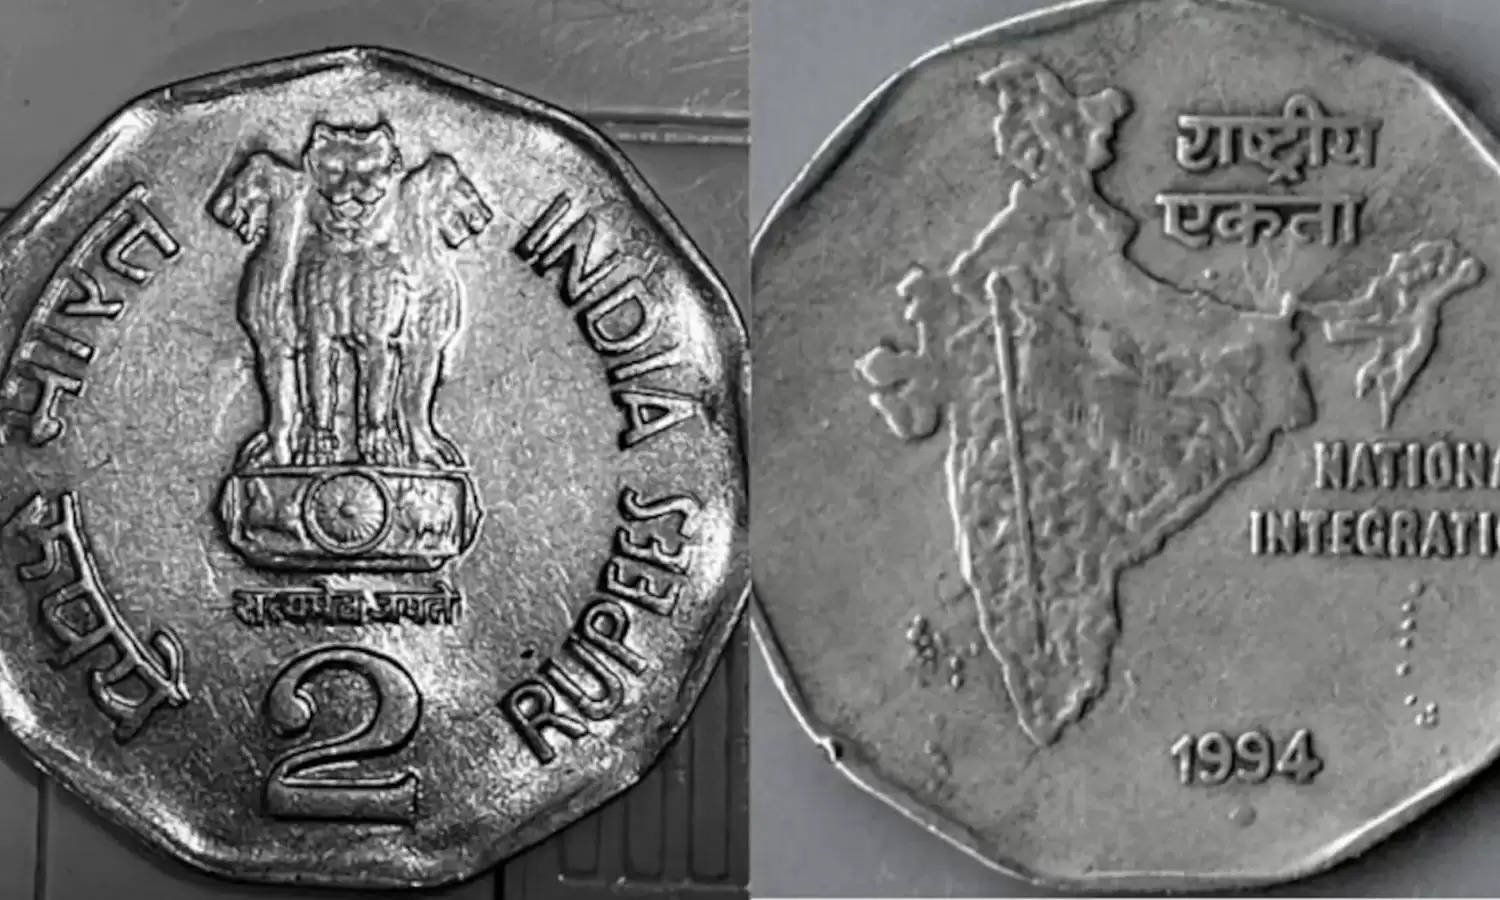 Old Coin Sale: 2 रुपये का पुराना सिक्का दे रहा लाखों कमाने का मौका, जानें कैसे